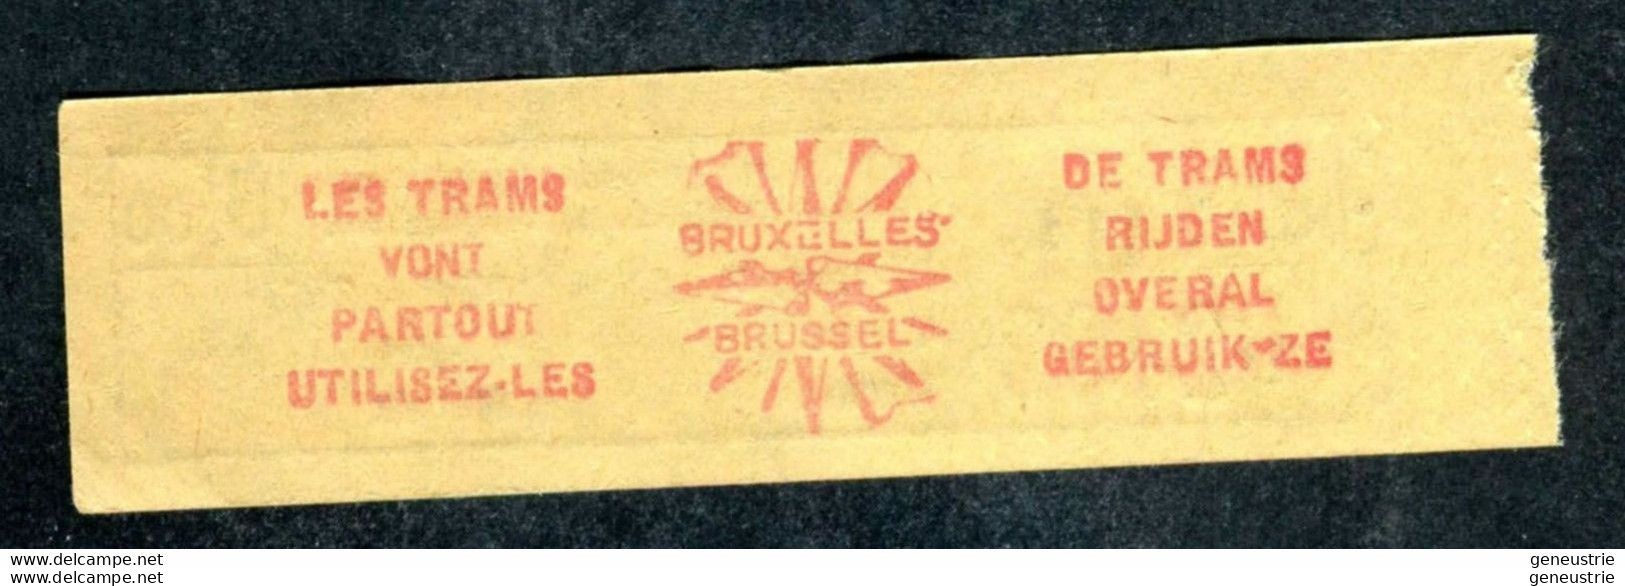 Ticket De Tramways Bruxellois Années 40/50 - Billet Tramway Bruxelles - Belgique - Europa